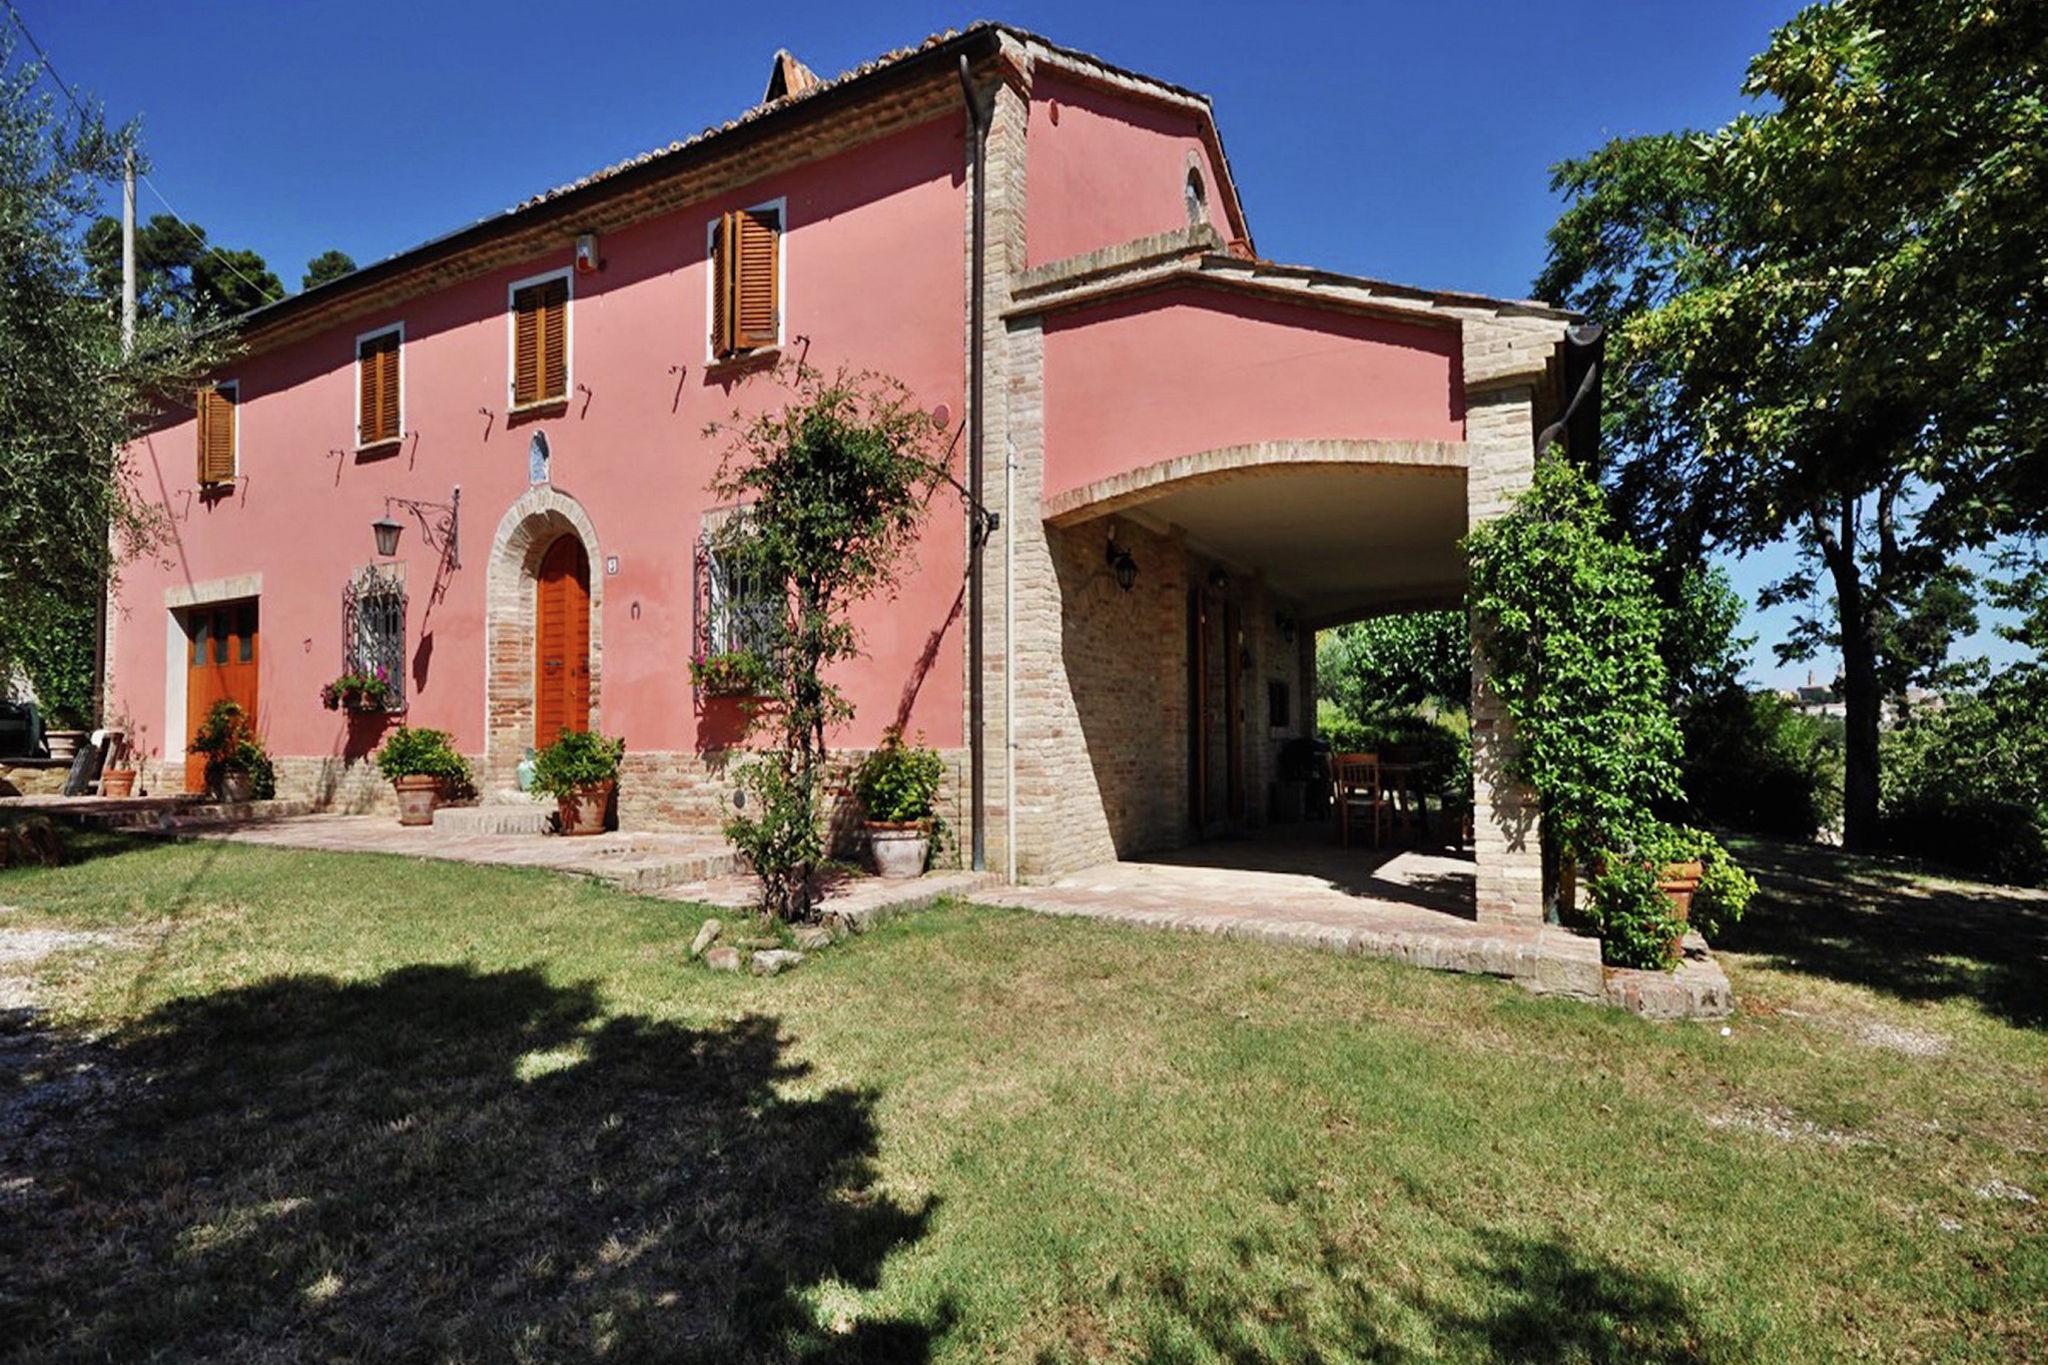 Villa with private pool and garden in the hills near Mondavio